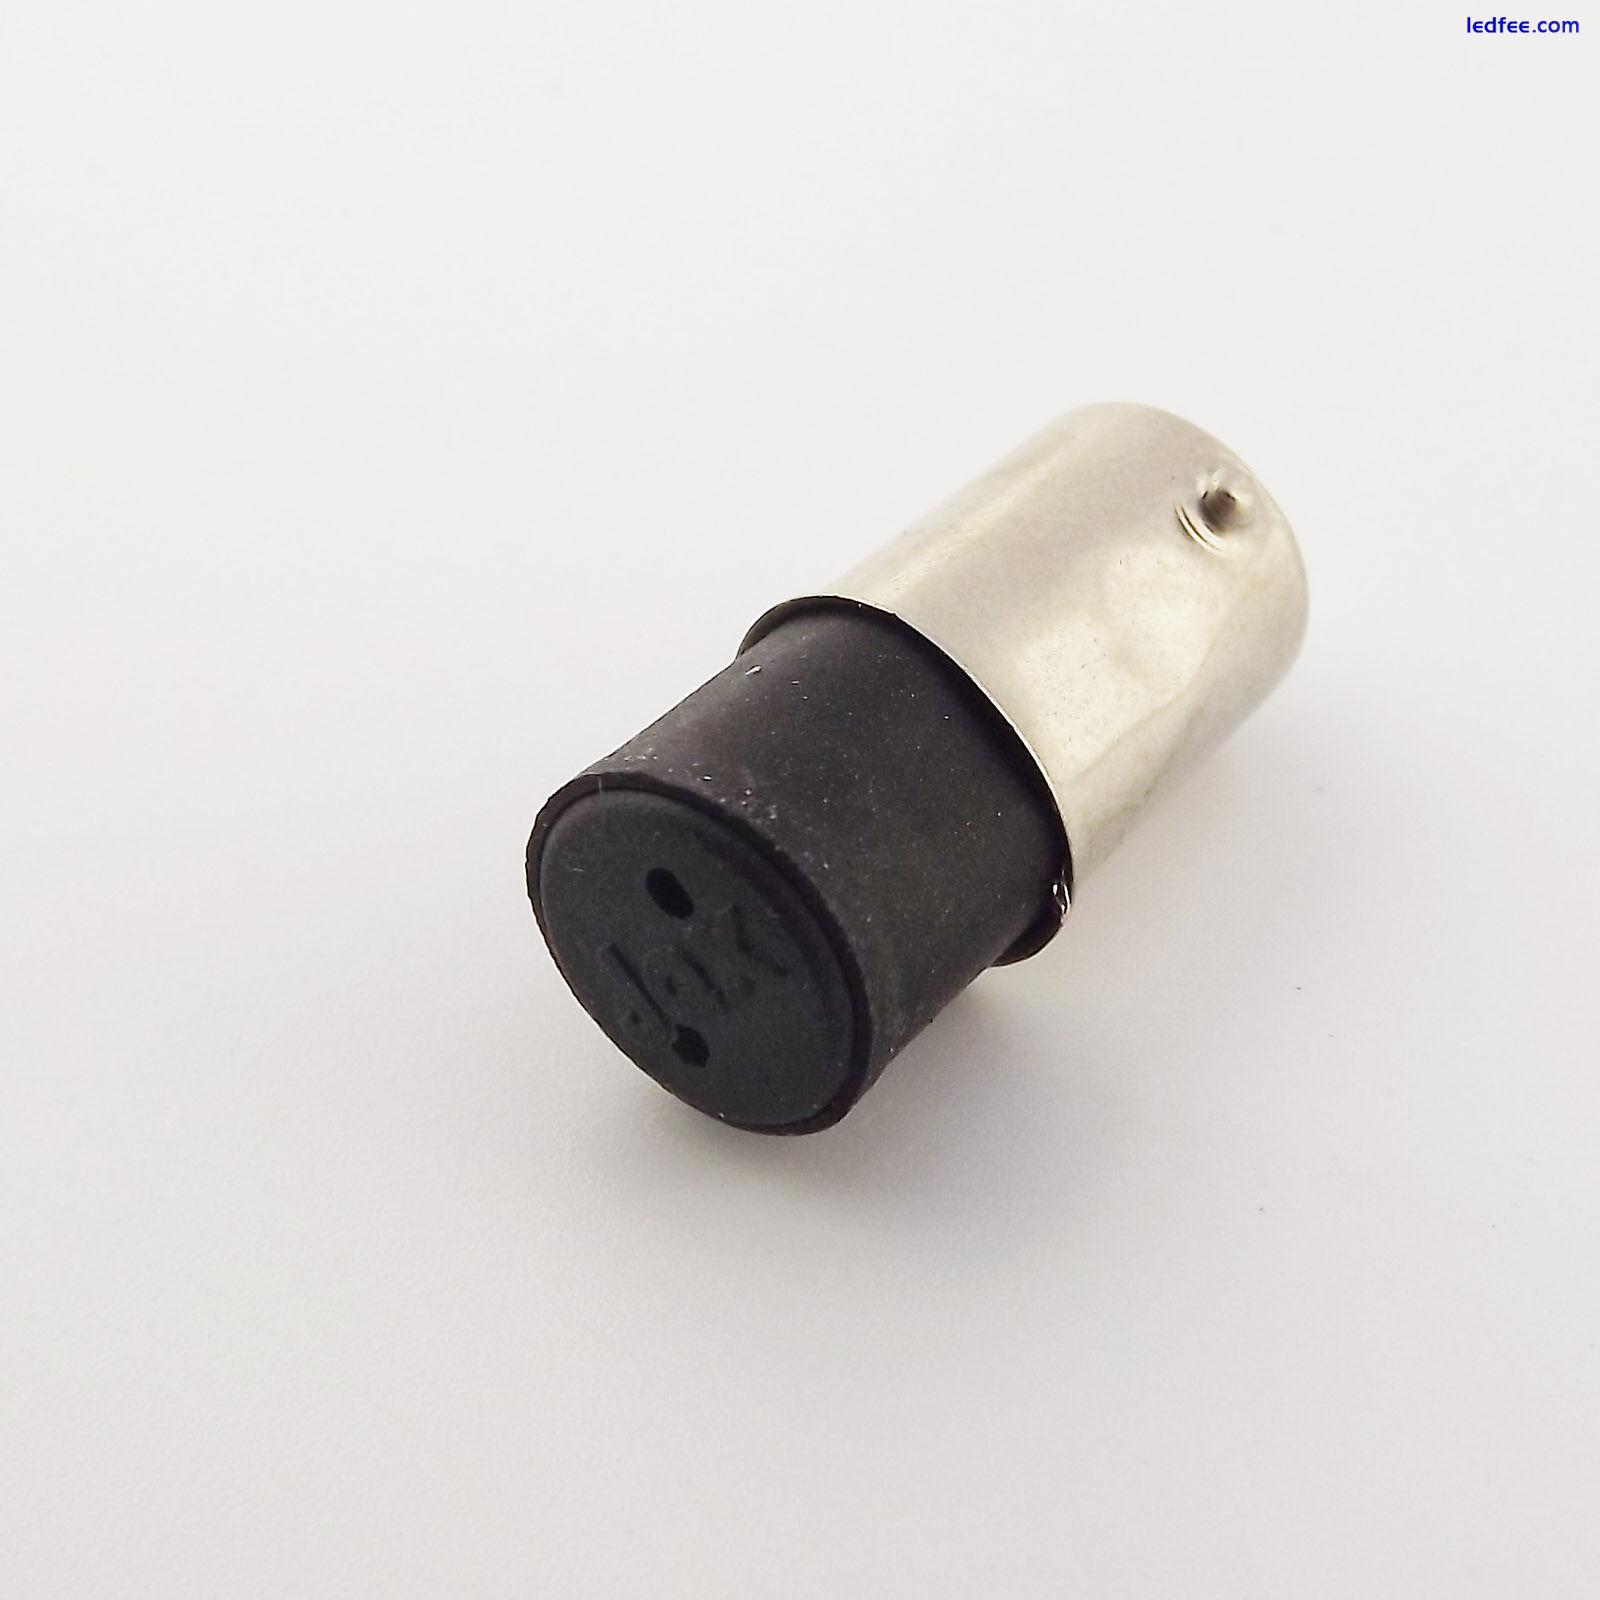 BA9S to G4 Lamp Holder LED Screw Thread Light Bulb Base Socket Adapter Converter 2 